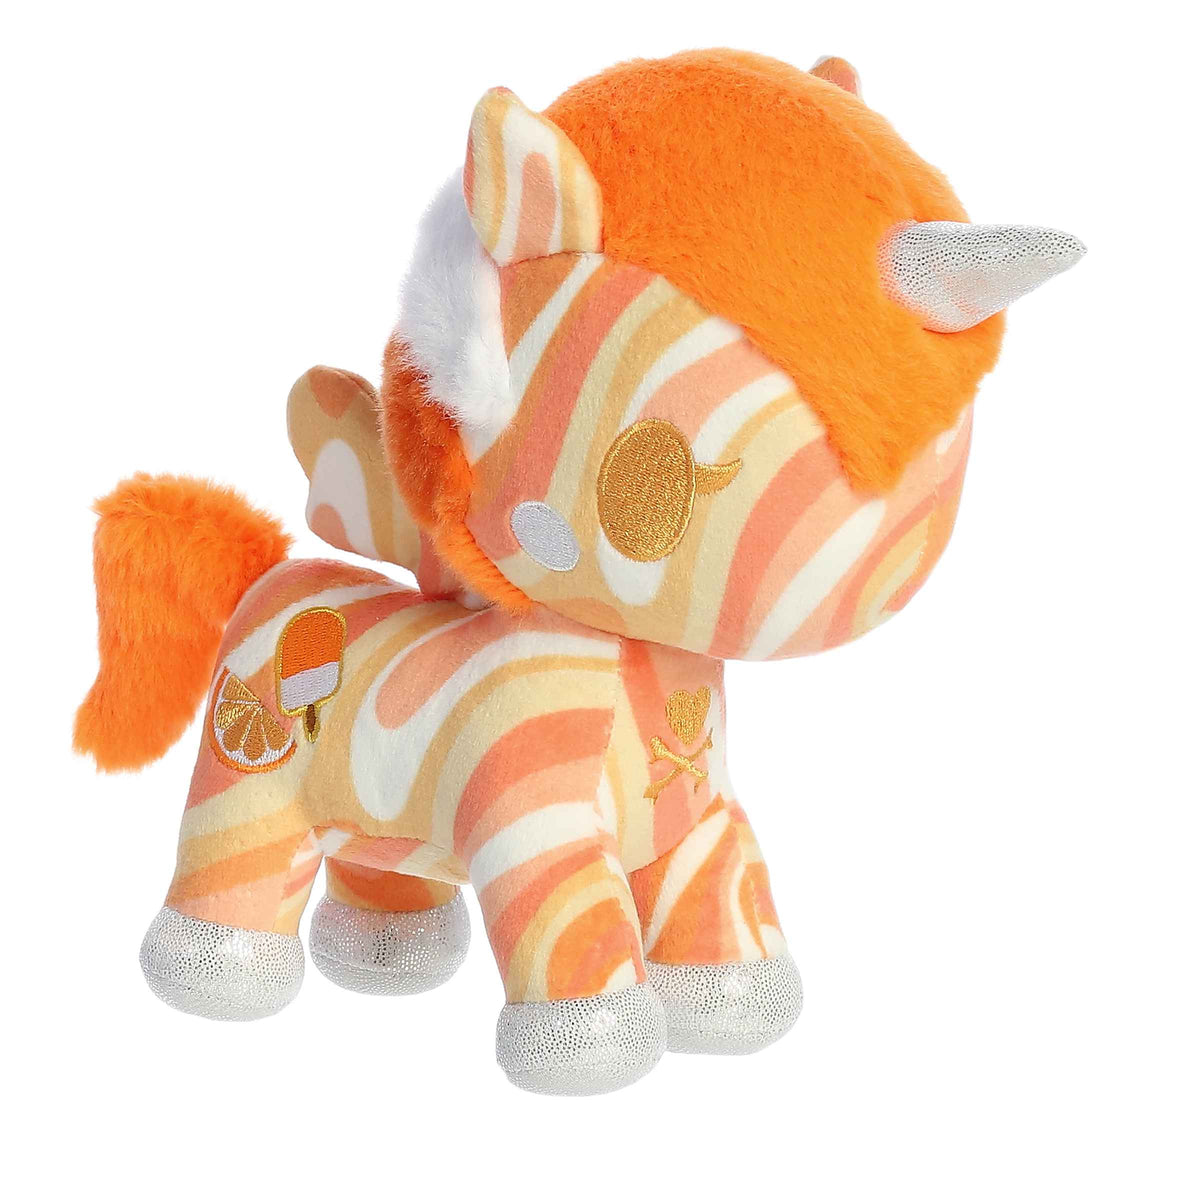 Orange Creamie Unicorno plush by tokidoki from Aurora, orange and white unicorn plush, summer-themed, soft and snuggly